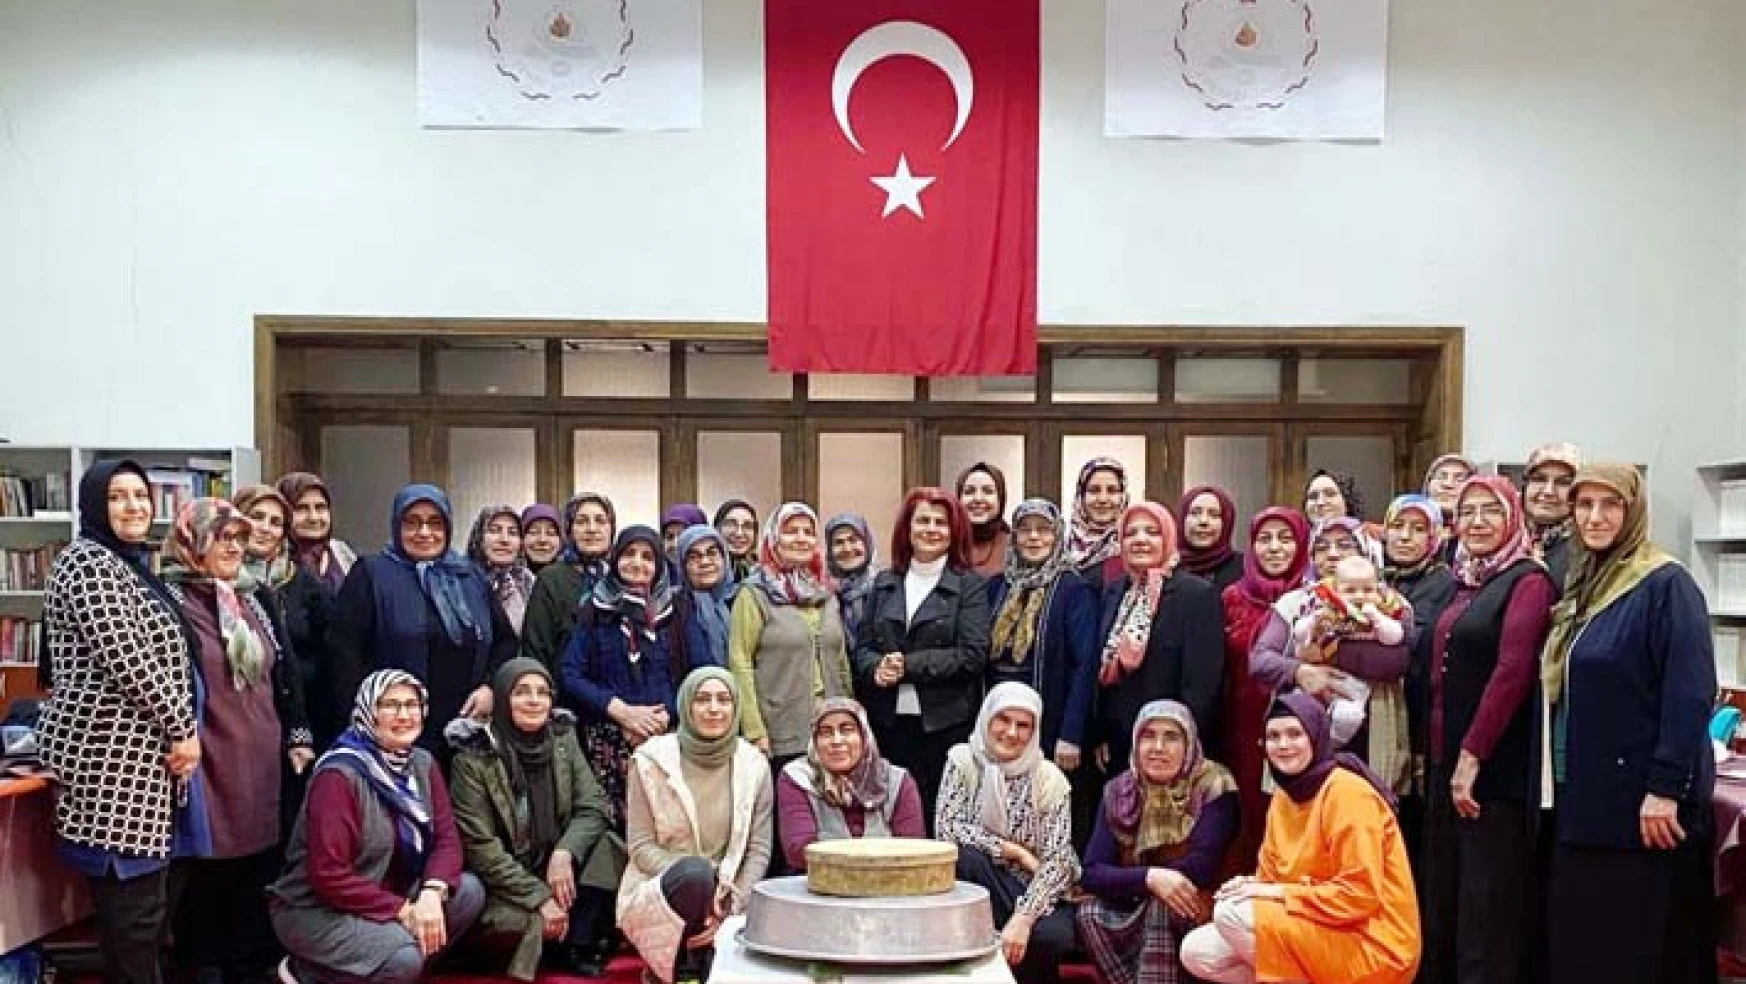 Konya'nın Çumra ilçesinde 8 Köyün Yörük Hanımları Bir Araya Geldi